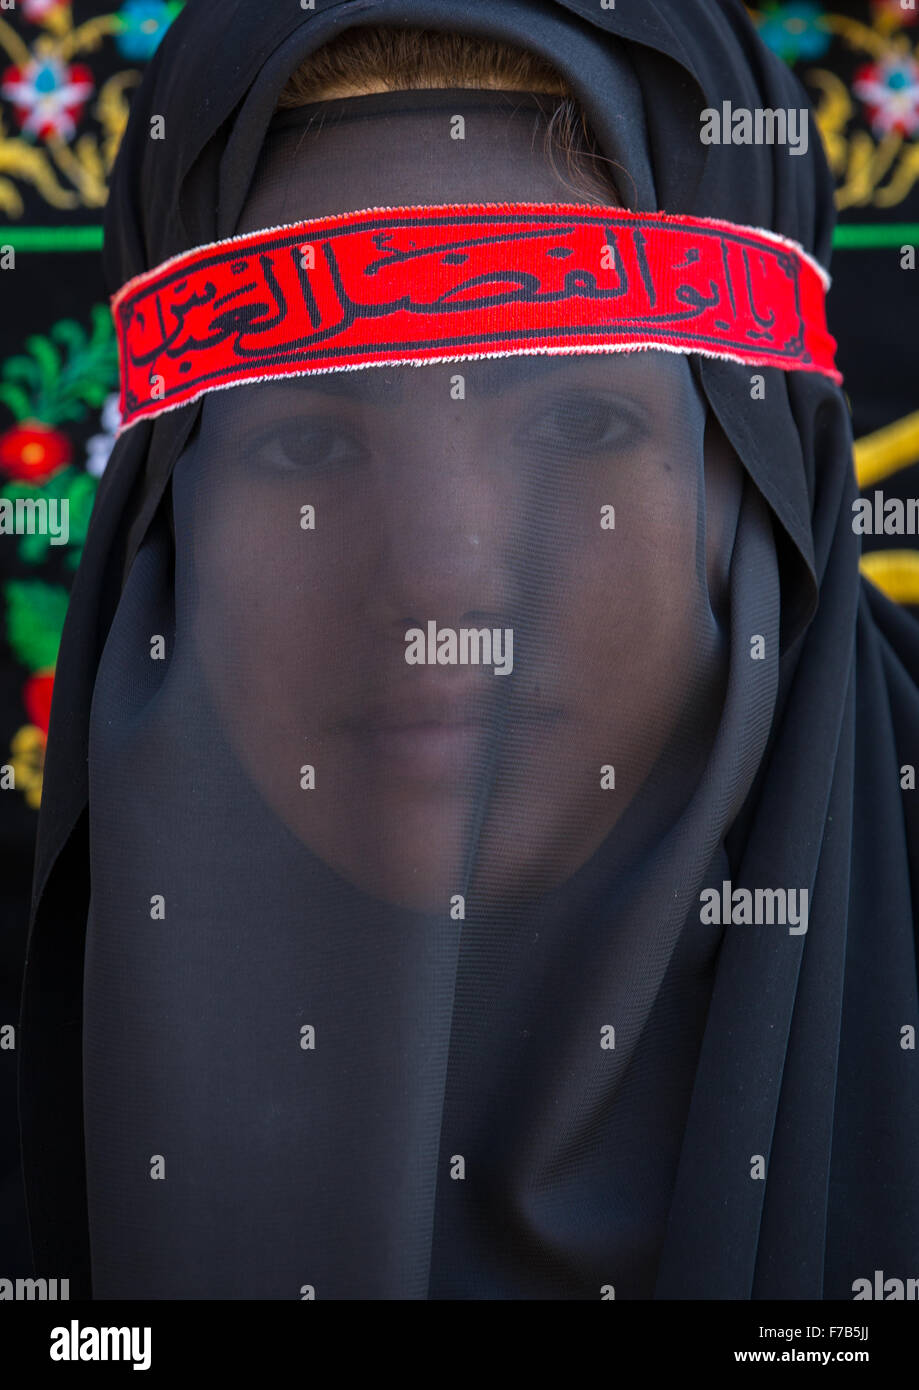 Femme musulmane chiite iranien deuil Imam Hussein Le jour de Tasua avec son visage couvert par un voile, la province du Lorestan, Khorramabad, Iran Banque D'Images